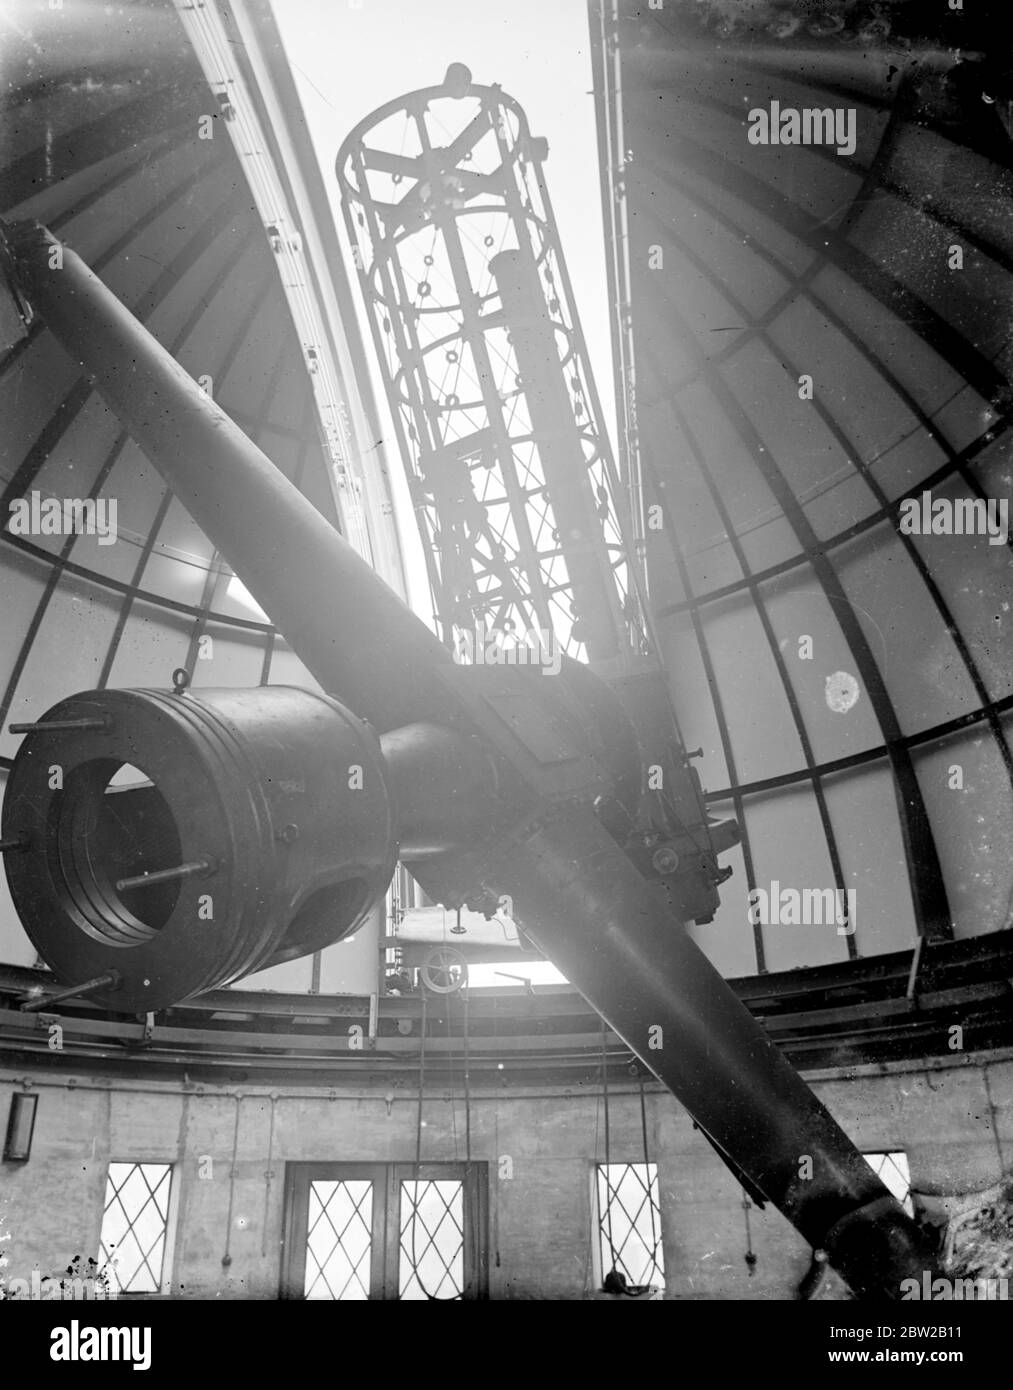 Un nouveau télescope géant pour mesurer la chaleur des étoiles au moyen de photographies a été installé à l'Observatoire de Greenwich, à Londres. La lumière des étoiles tombe sur le miroir et passe ensuite plusieurs fois du réflecteur à réfléchir et à une prison jusqu'à ce qu'elle atteigne enfin la plaque photographique. Le miroir du télescope mesure 36 pouces de diamètre et 6 pouces d'épaisseur et pèse 500 livres. Il a fallu deux ans pour faire. Le dôme mesure 34 pieds de diamètre et l'observateur peut contrôler tous les instruments complexes d'une simple pression sur un bouton. 17 avril 1934 Banque D'Images